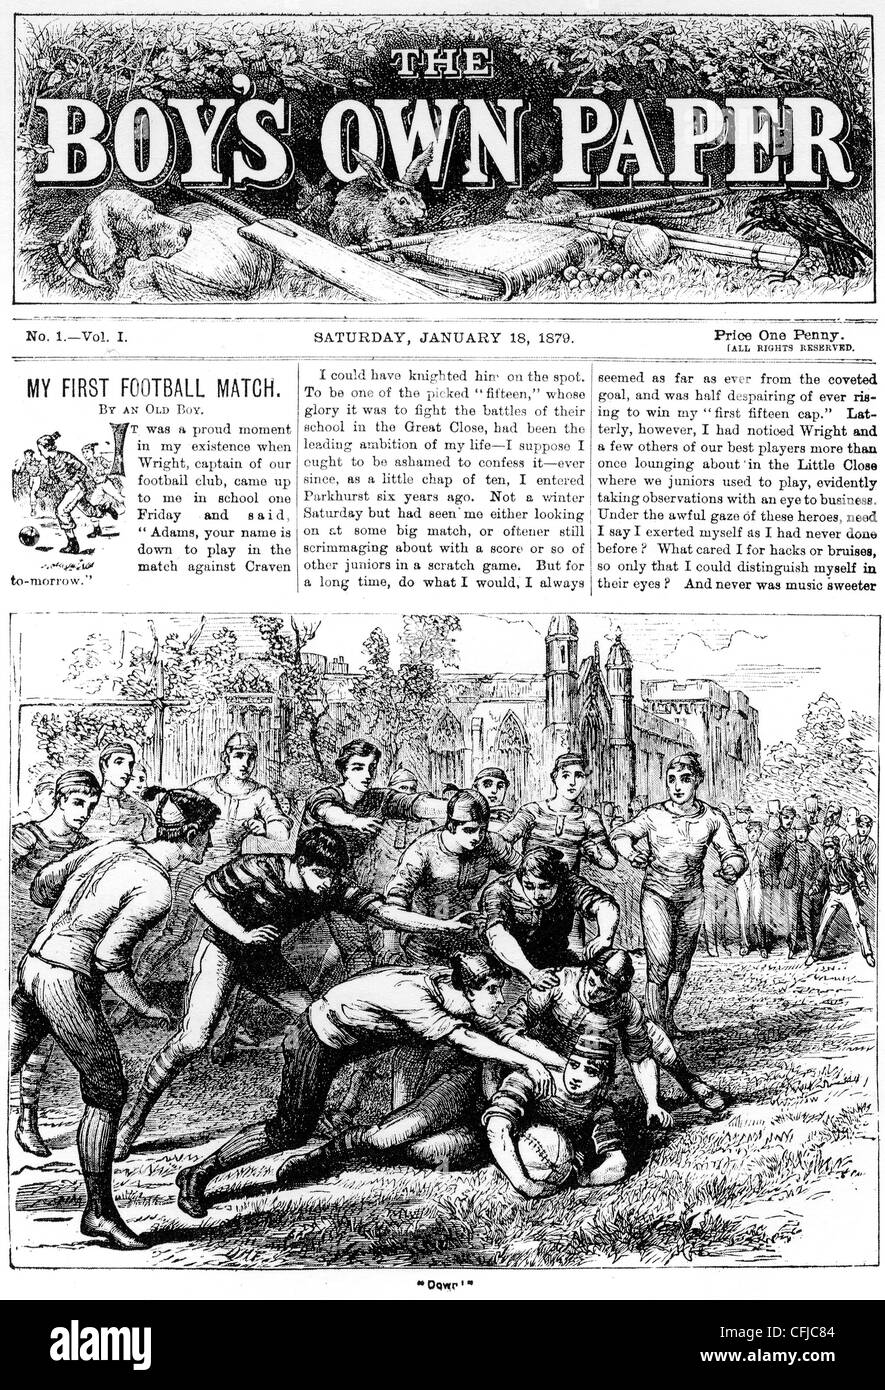 Le BOY'S OWN PAPER La première édition du 18 janvier 1879 Banque D'Images